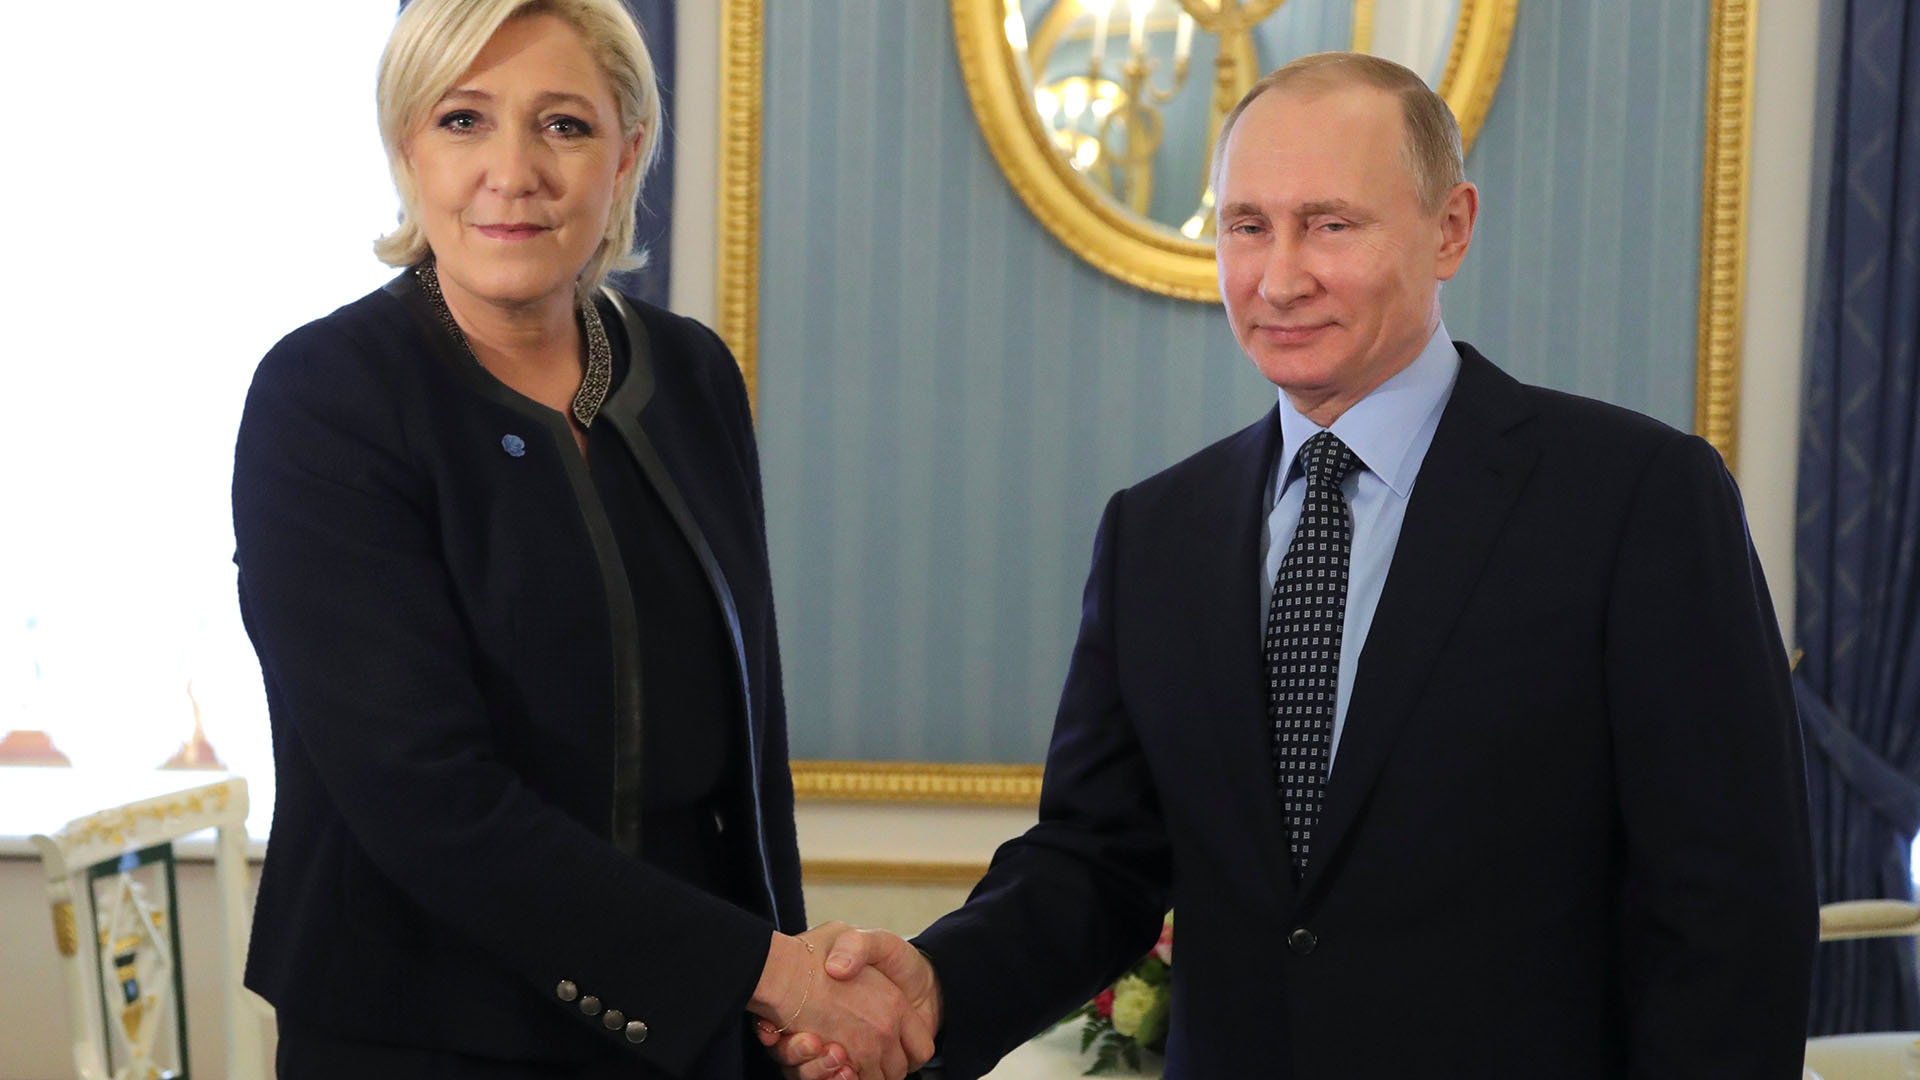 La más comprometida, pero tambien la que ha sabido virar su campaña para evitar el lastre de su atracción por Putin, es Marine Le Pen